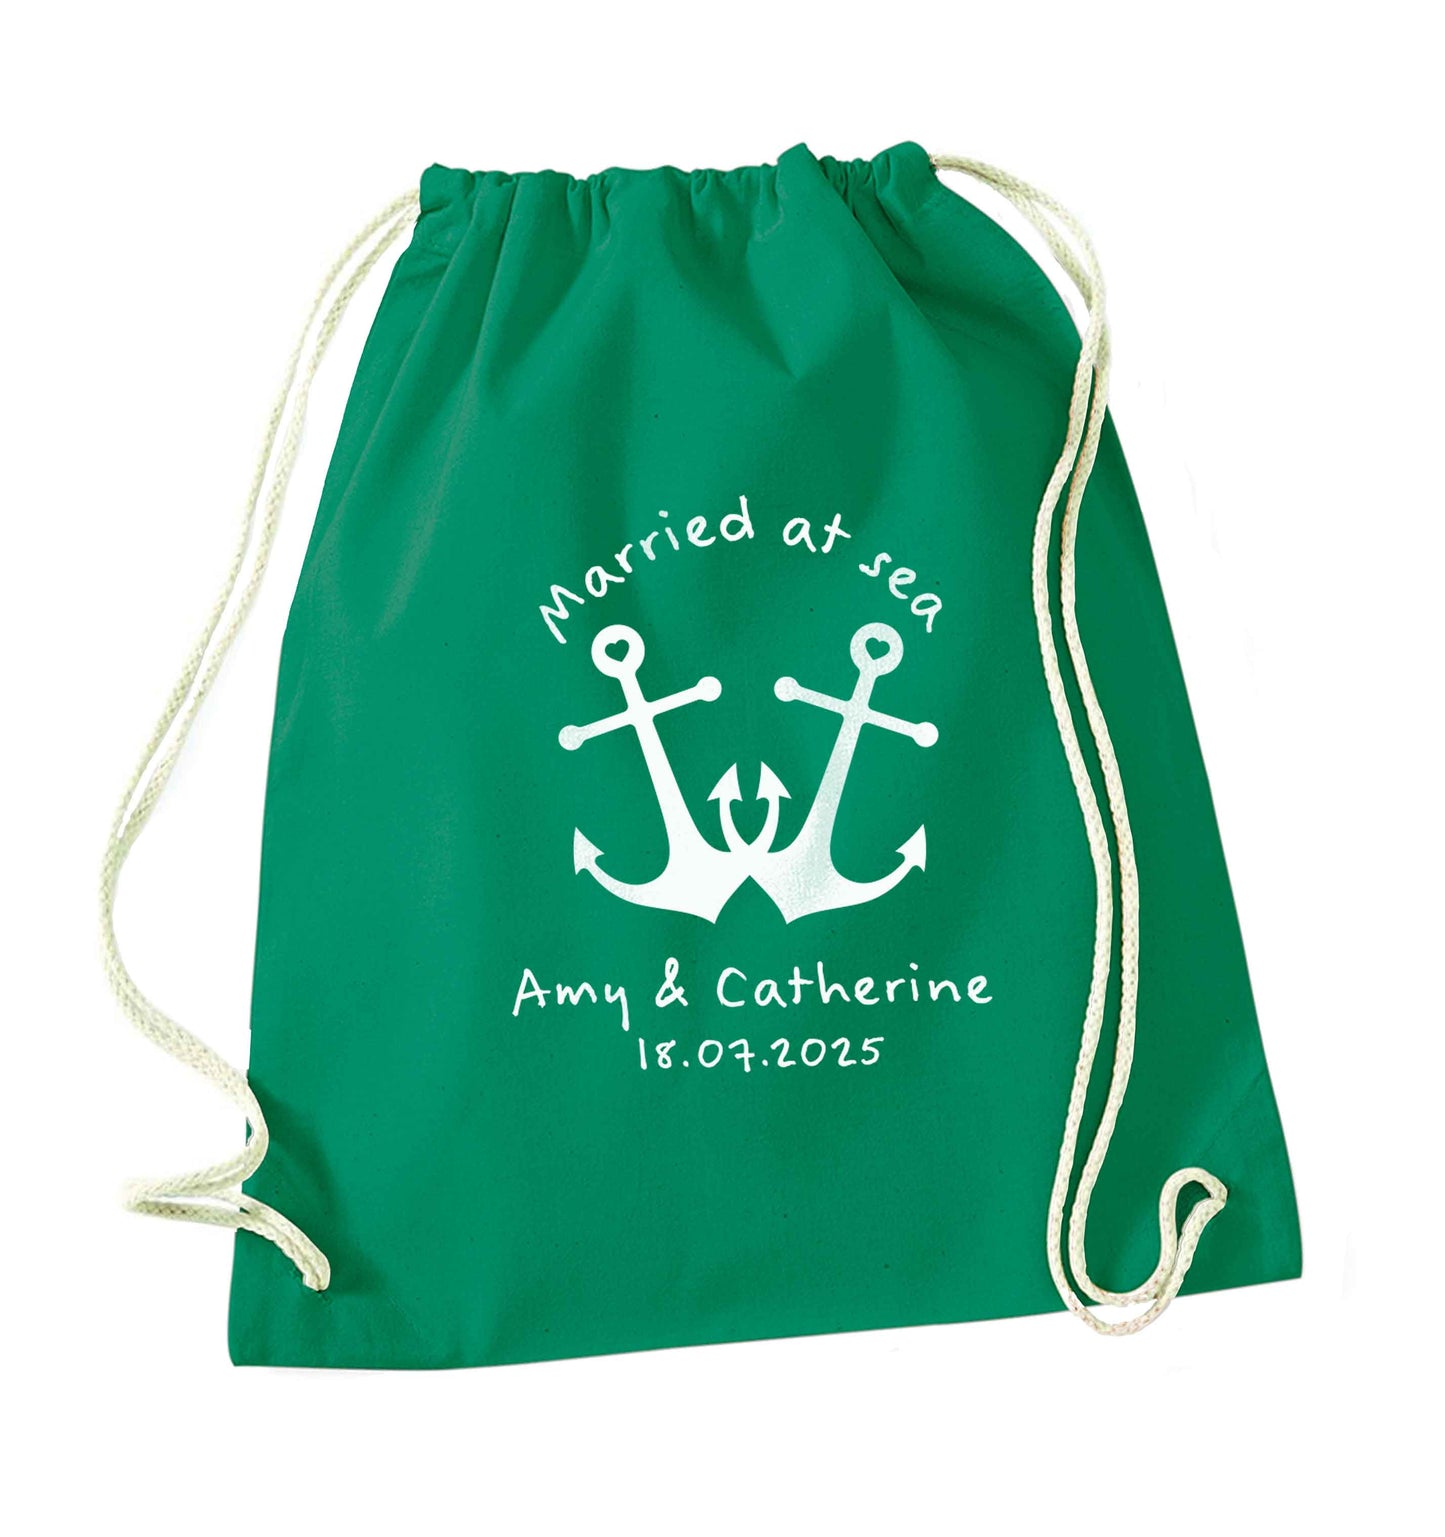 Married at sea pink anchors green drawstring bag